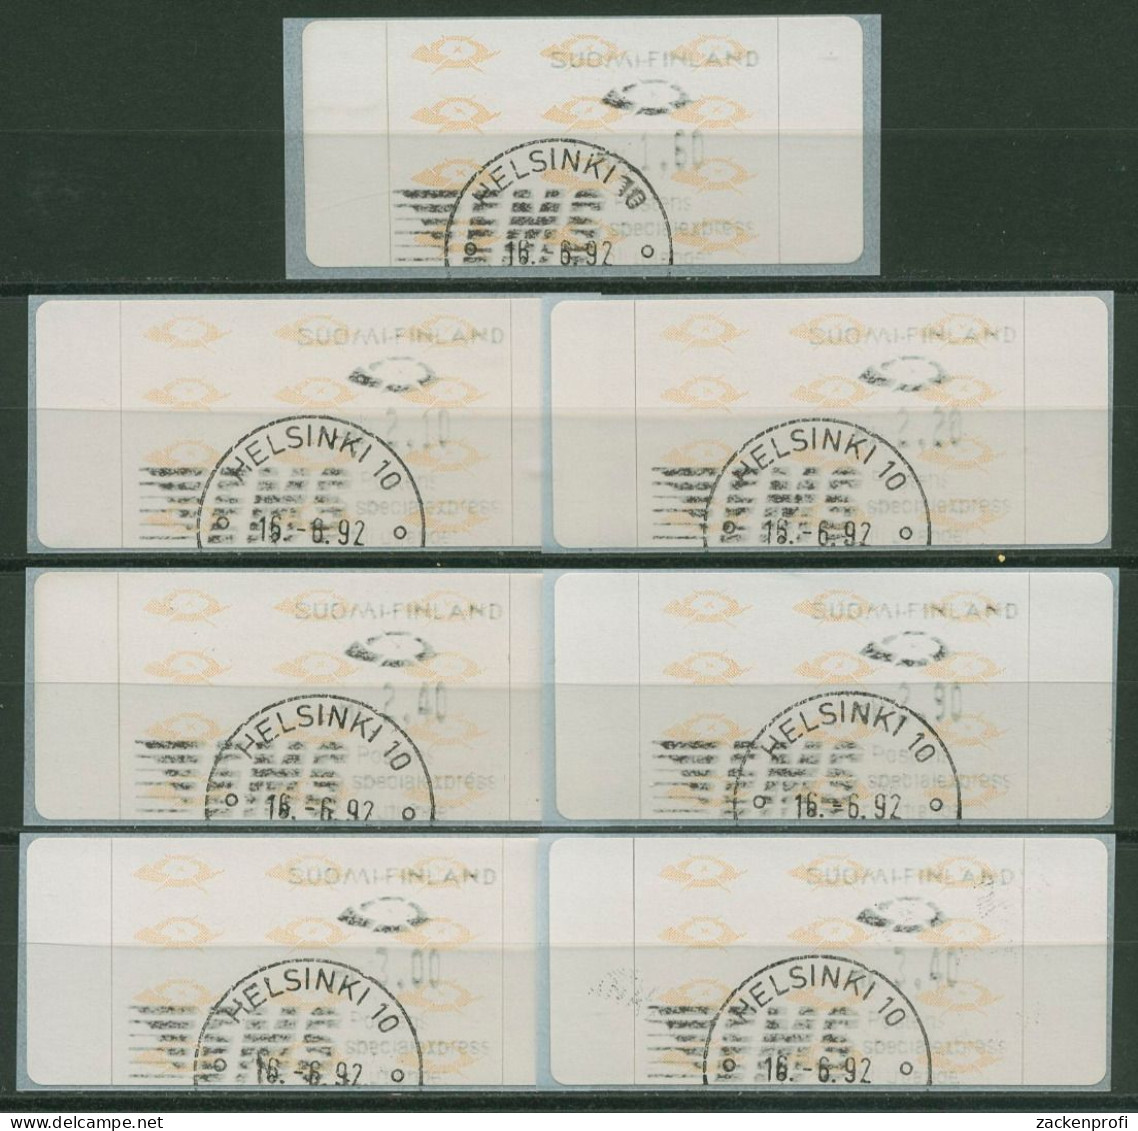 Finnland Automatenmarken 1992 Posthörner Satz 7 Werte ATM 12.2 S 1 Gestempelt - Automatenmarken [ATM]